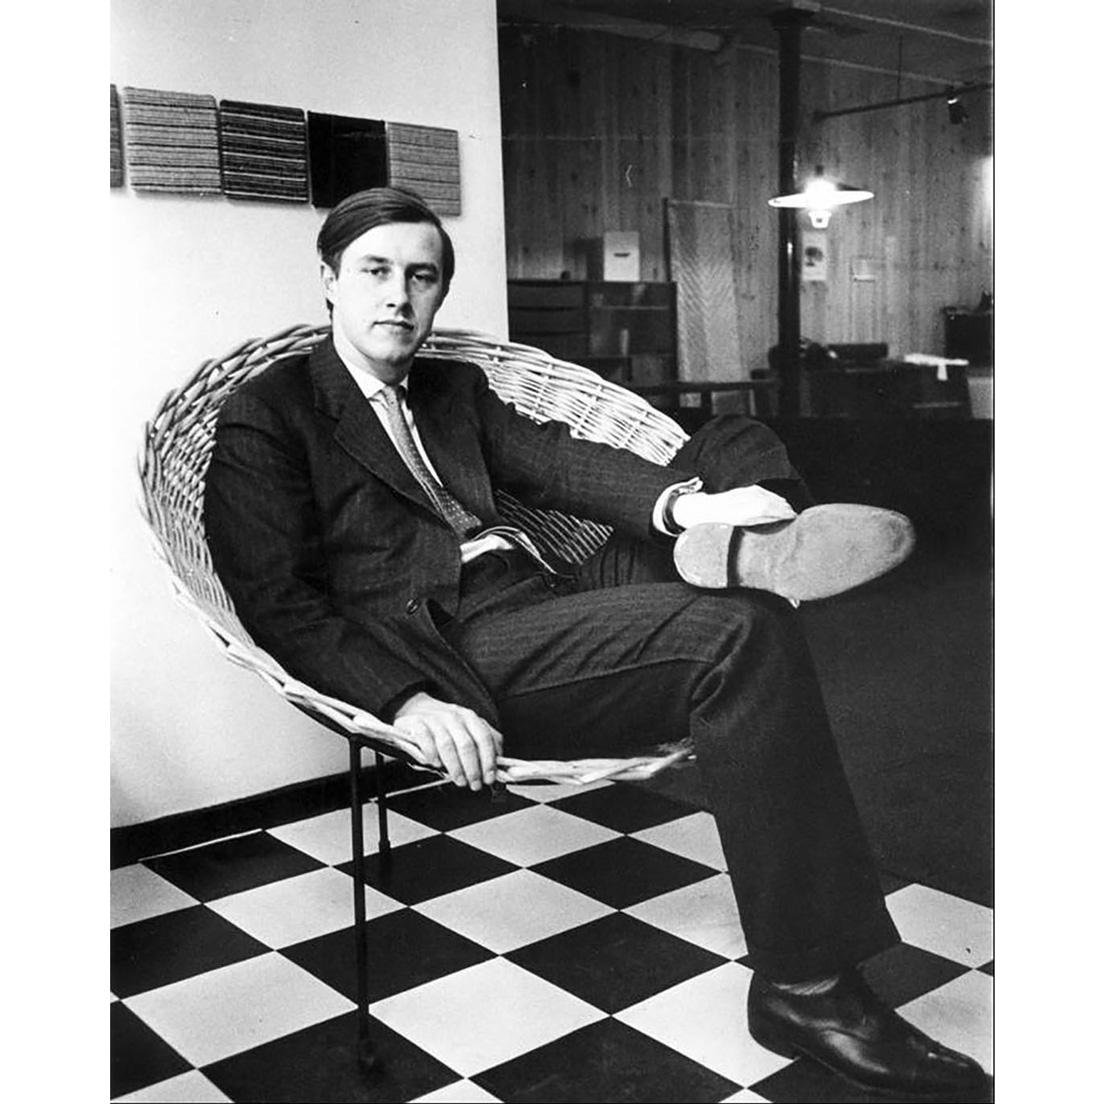 バスケットのように円錐状に編んだ籐をメタルフレームに乗せた、初期の作品〈コーン・チェア〉（1953年）に腰掛けた、若きテレンス・コンラン。